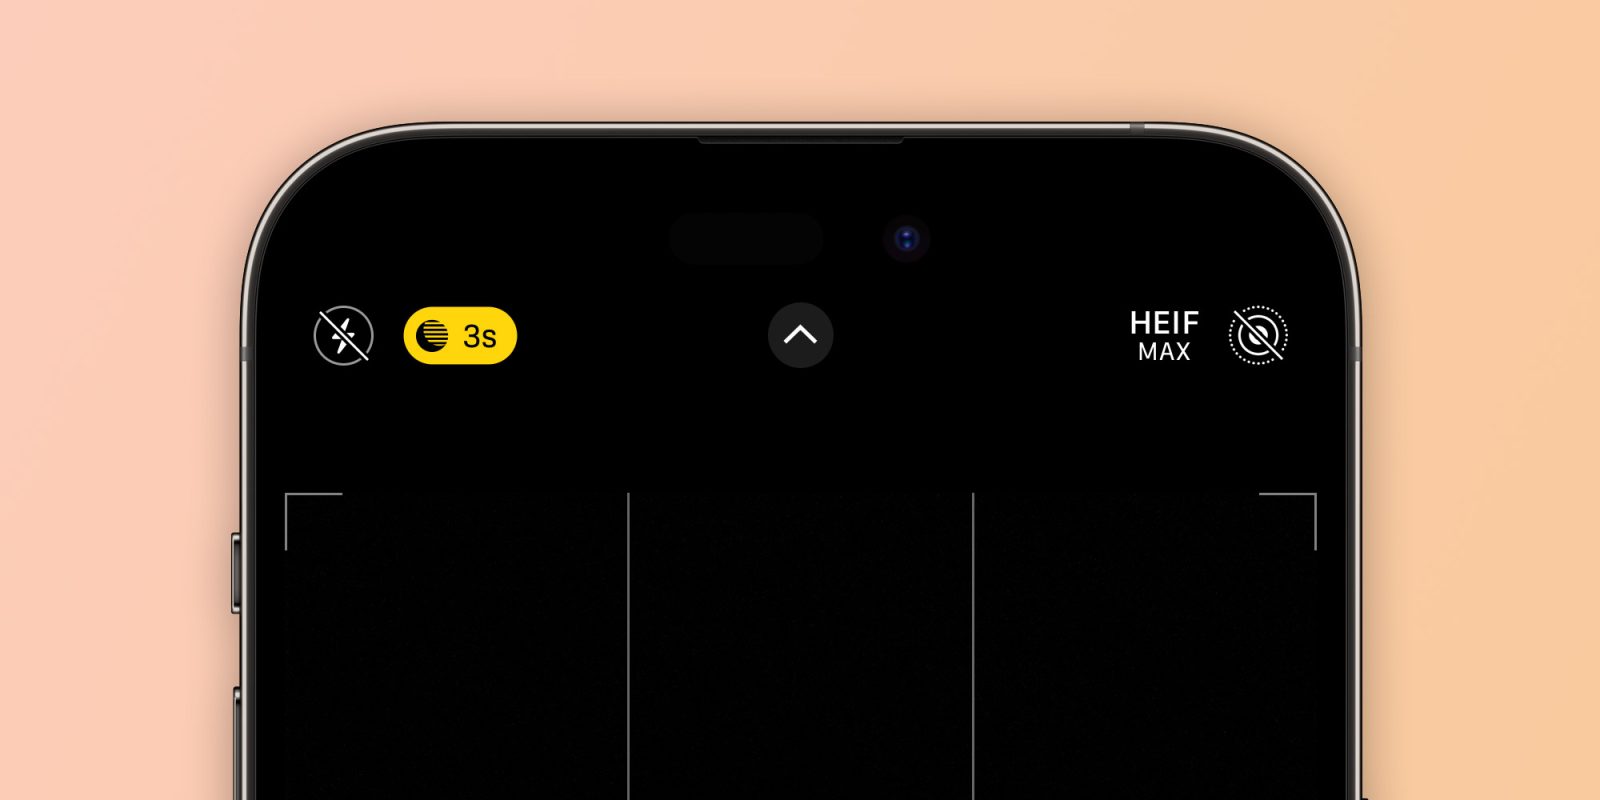 iPhone 14 Pro также получит опцию HEIF Max для съемки фотографий с разрешением 48 Мп в приложении «Камера».